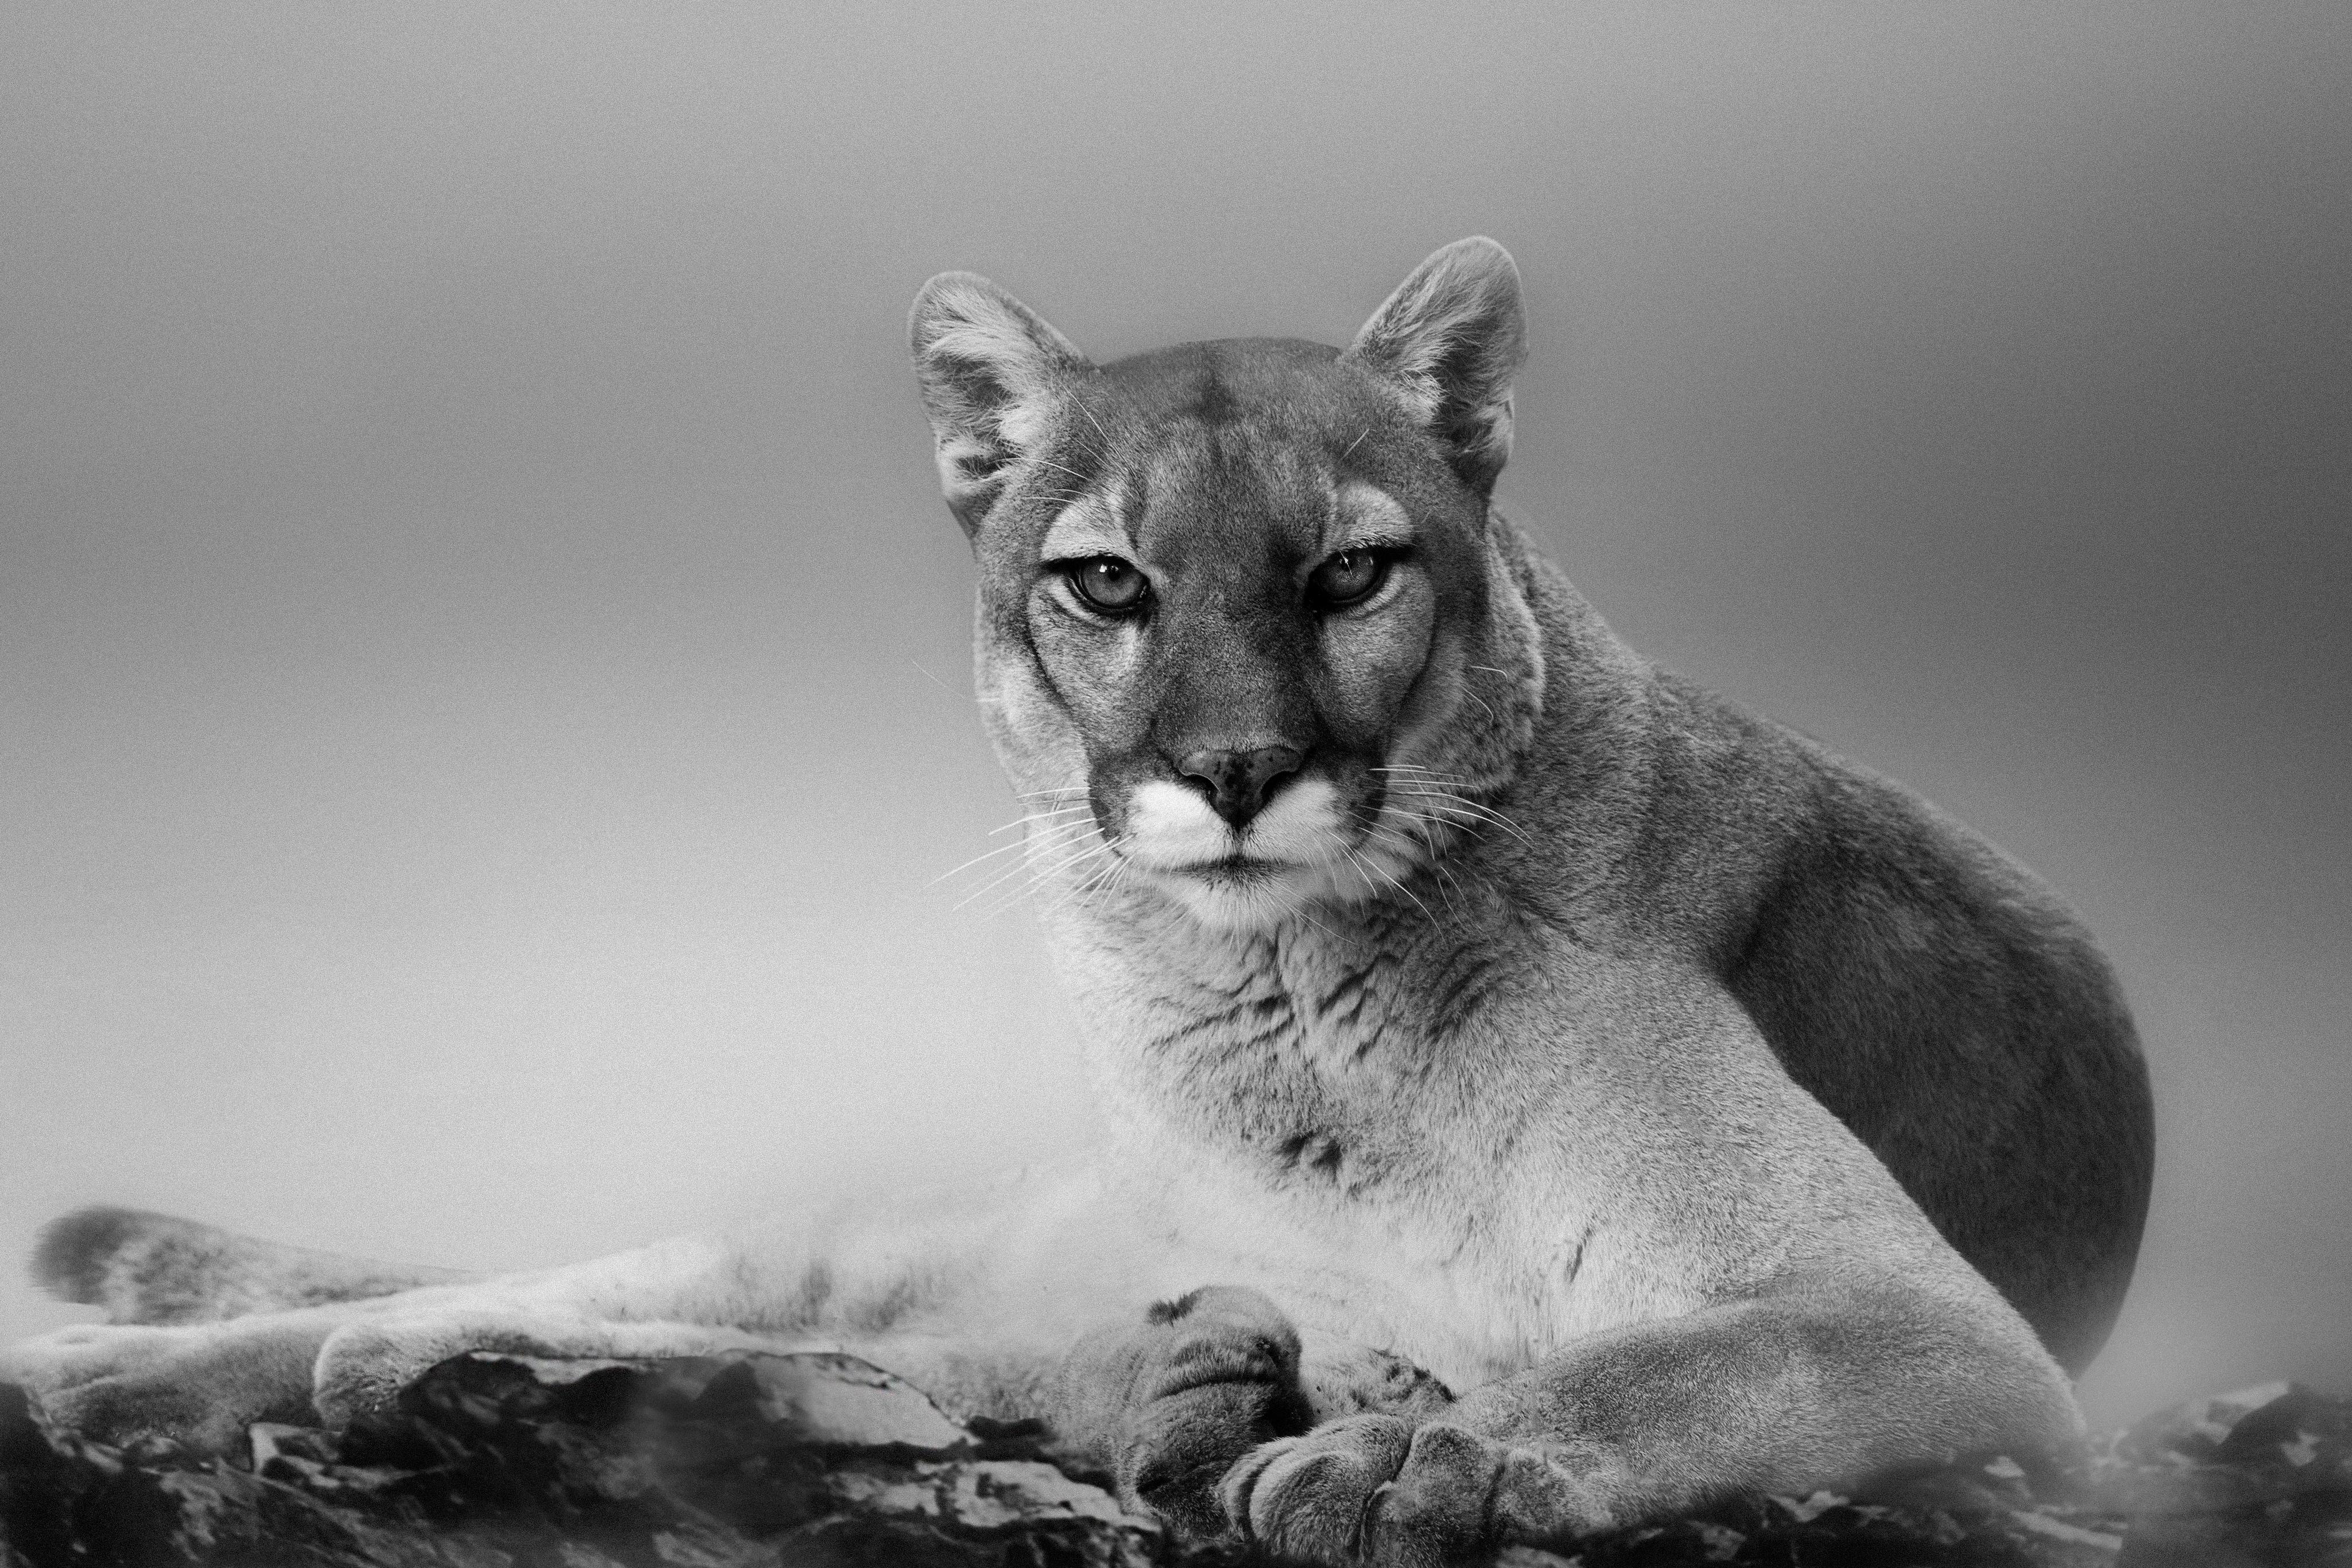 Black and White Photograph Shane Russeck - Impression au Cougar 36x48 - Photographie d'art d'un lion de montagne, photographie non signée